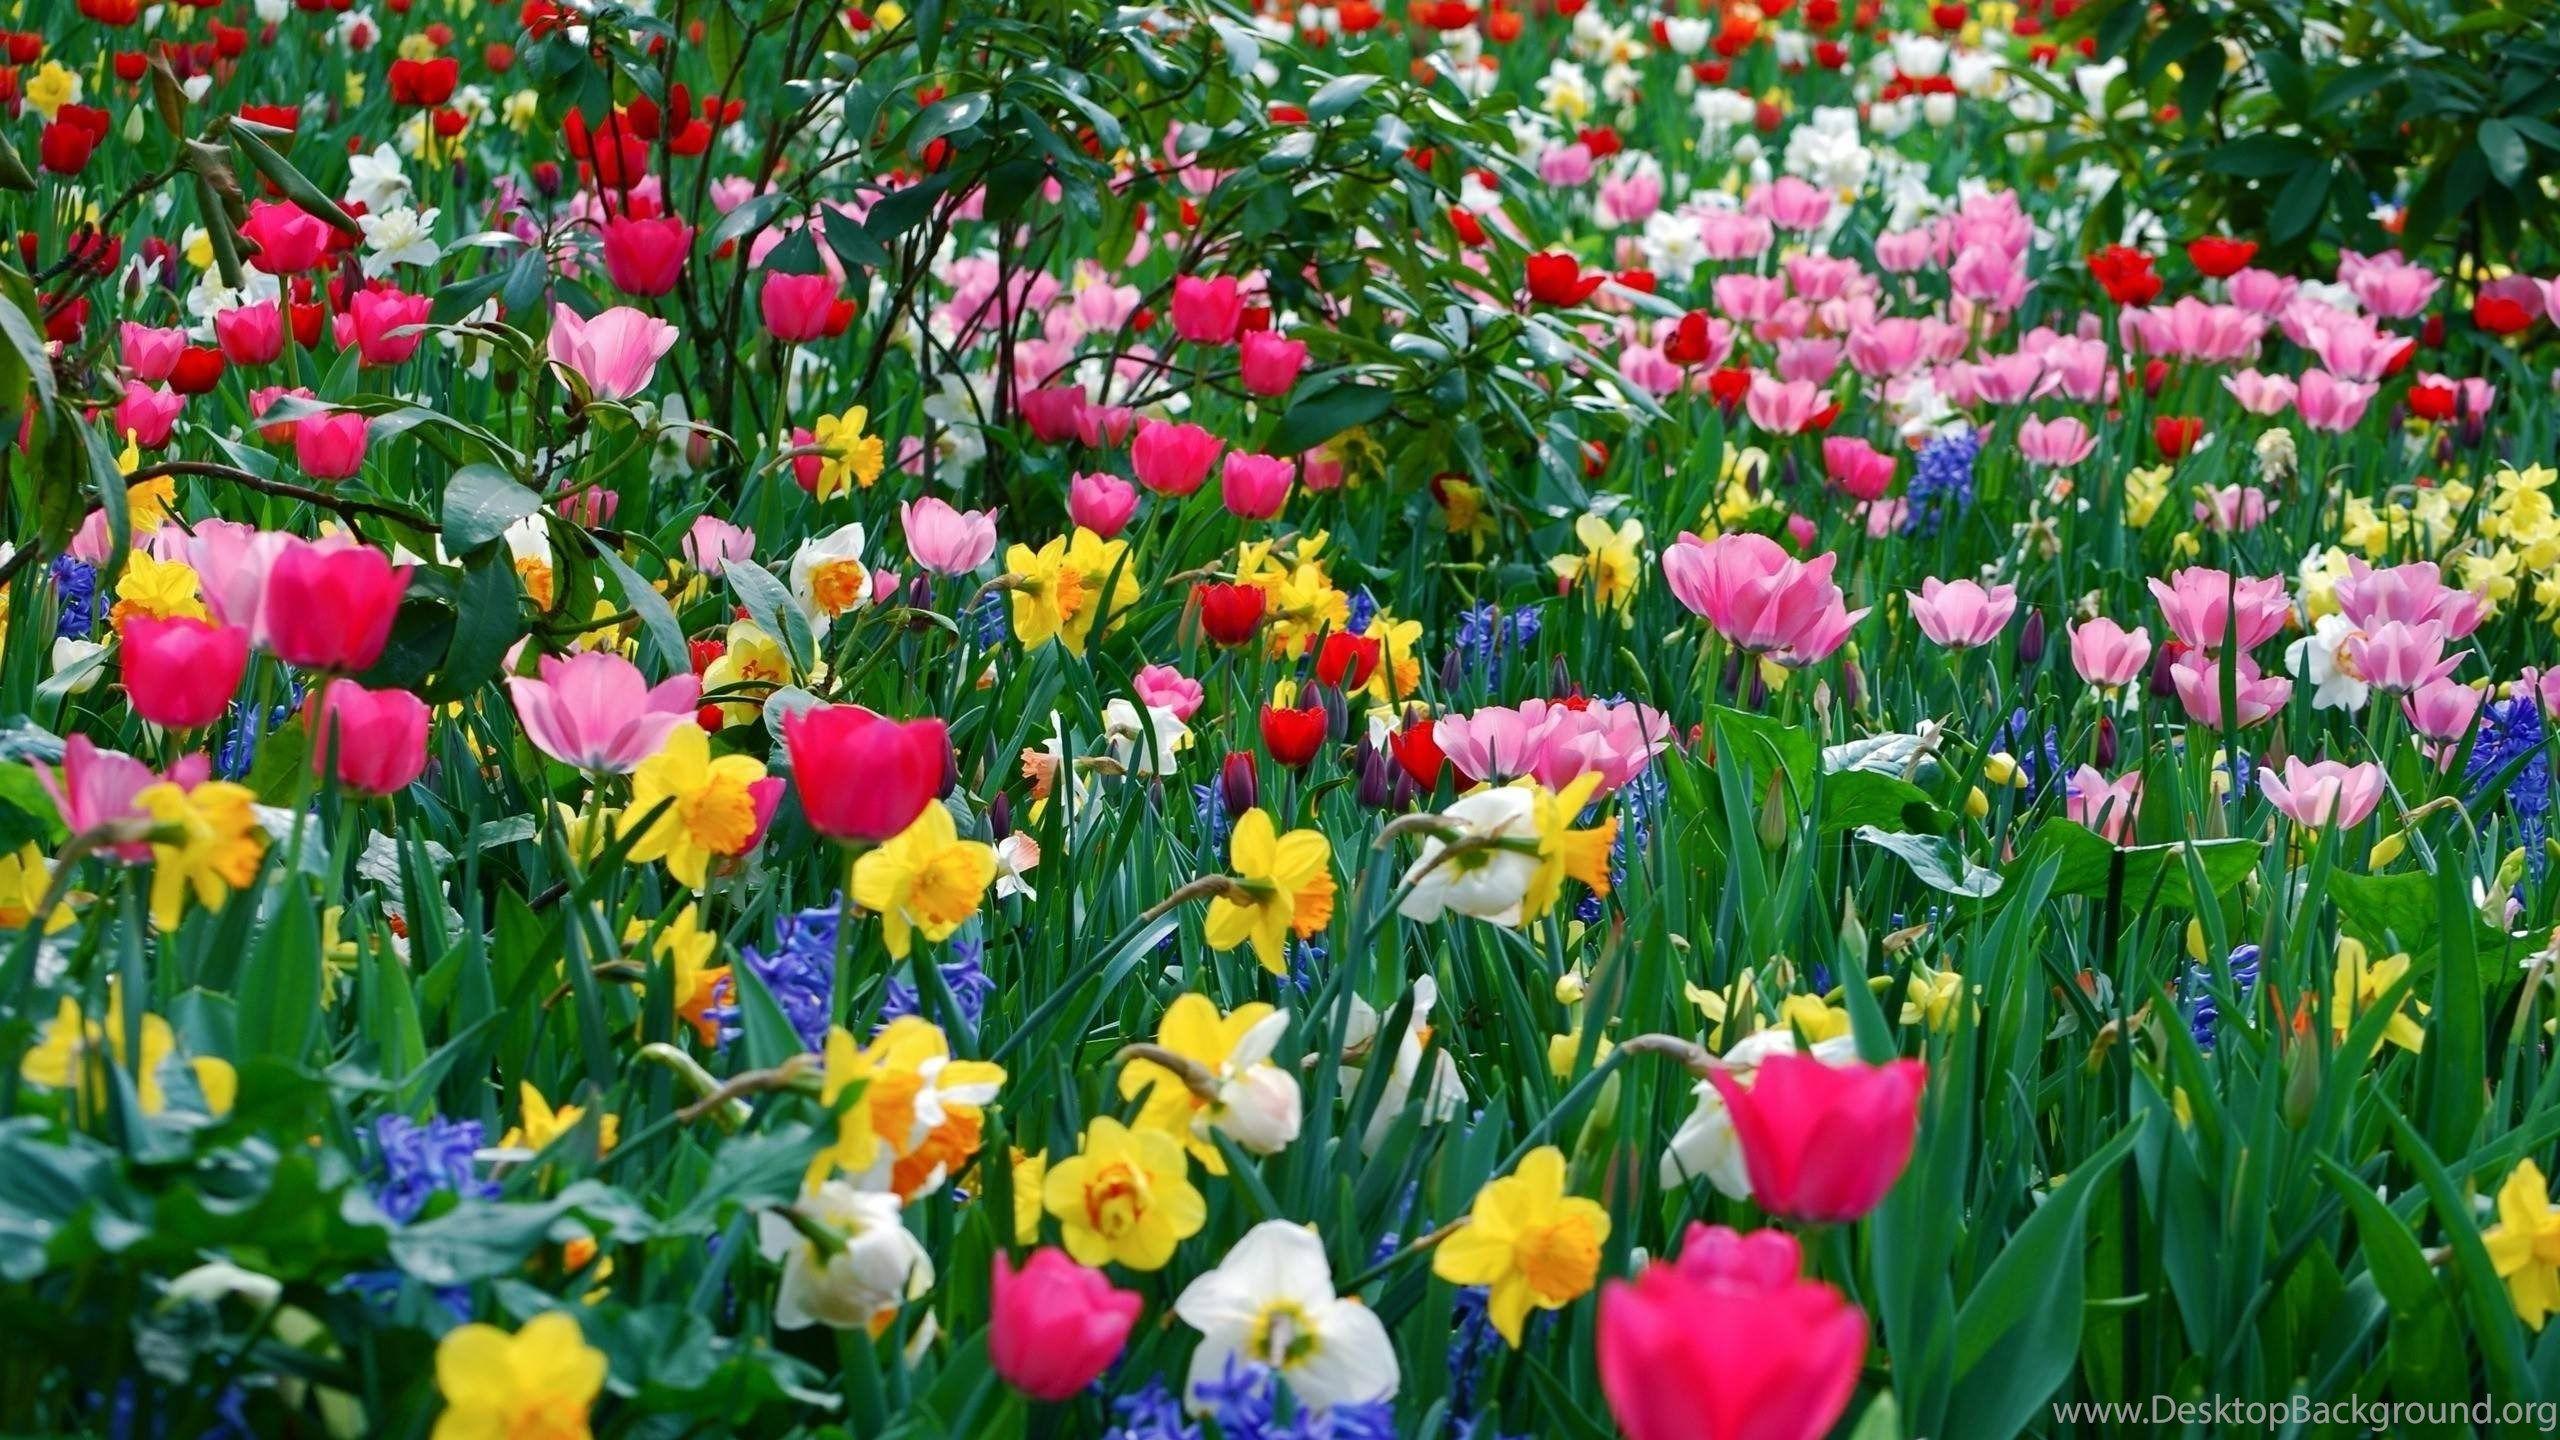 Hình ảnh 2560x1440 Hình nền mát mẻ Hình nền hoa mùa xuân Hình nền HD